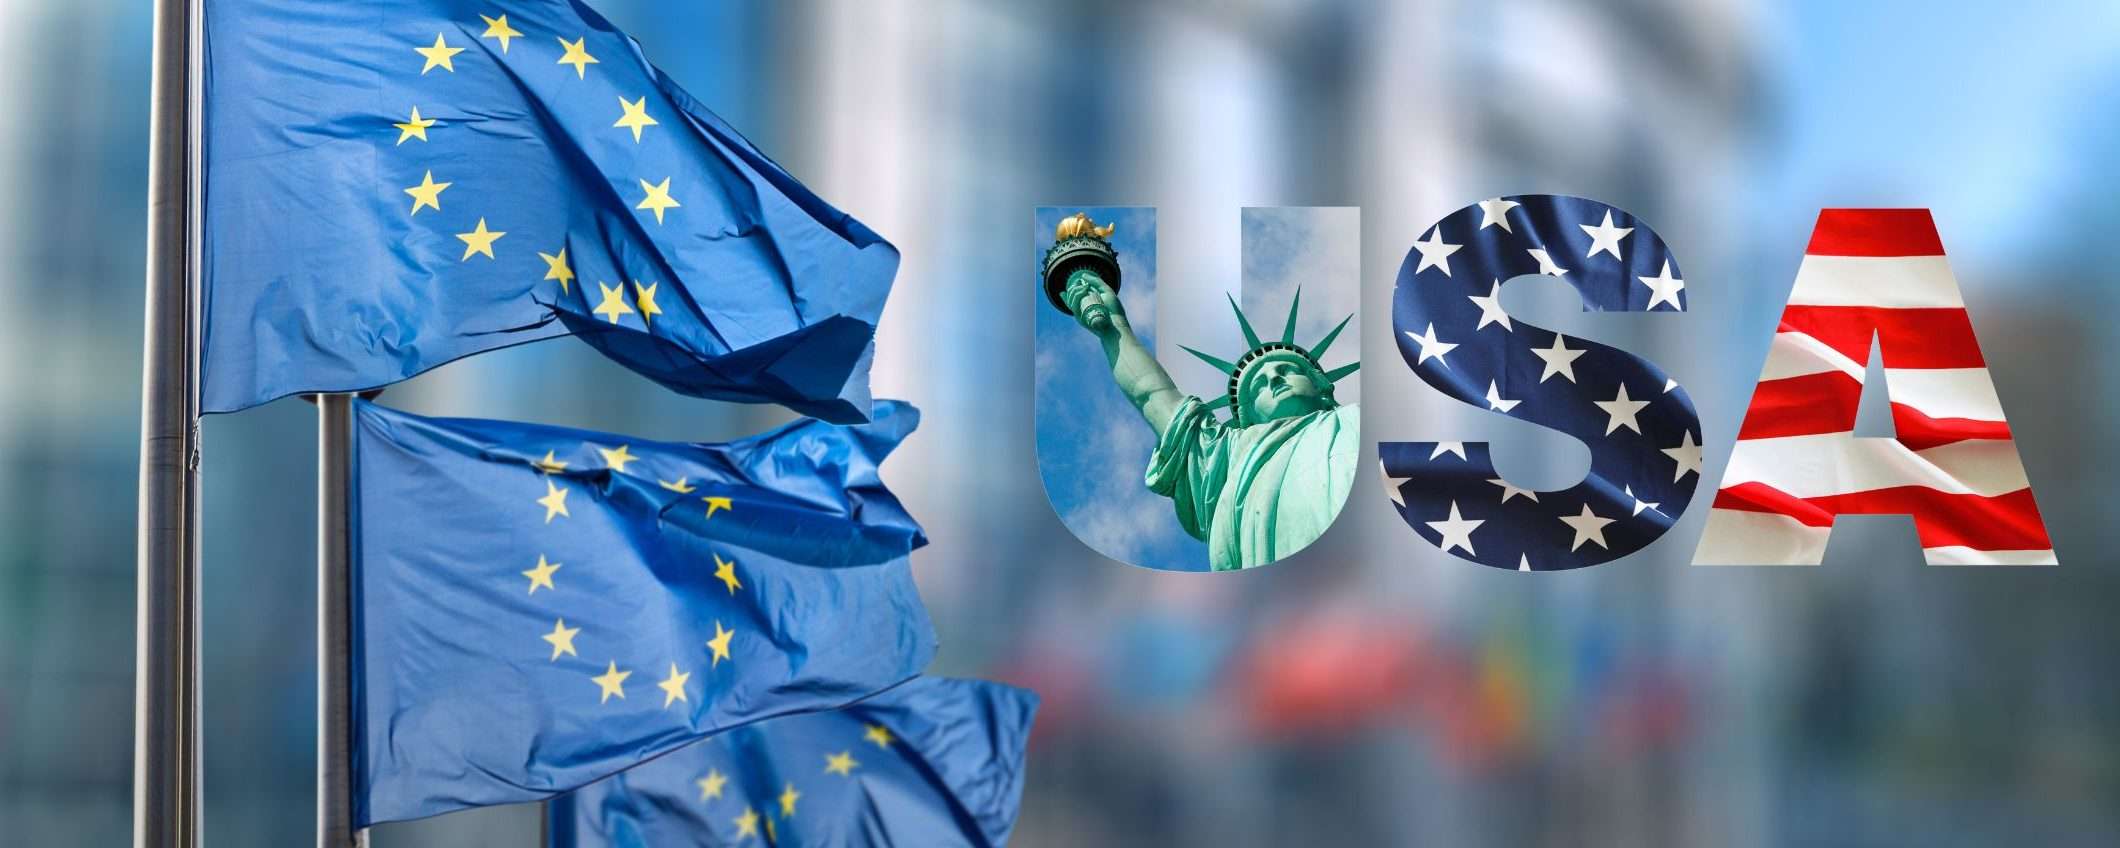 Annunciata cooperazione UE-USA sull'intelligenza artificiale al TTC